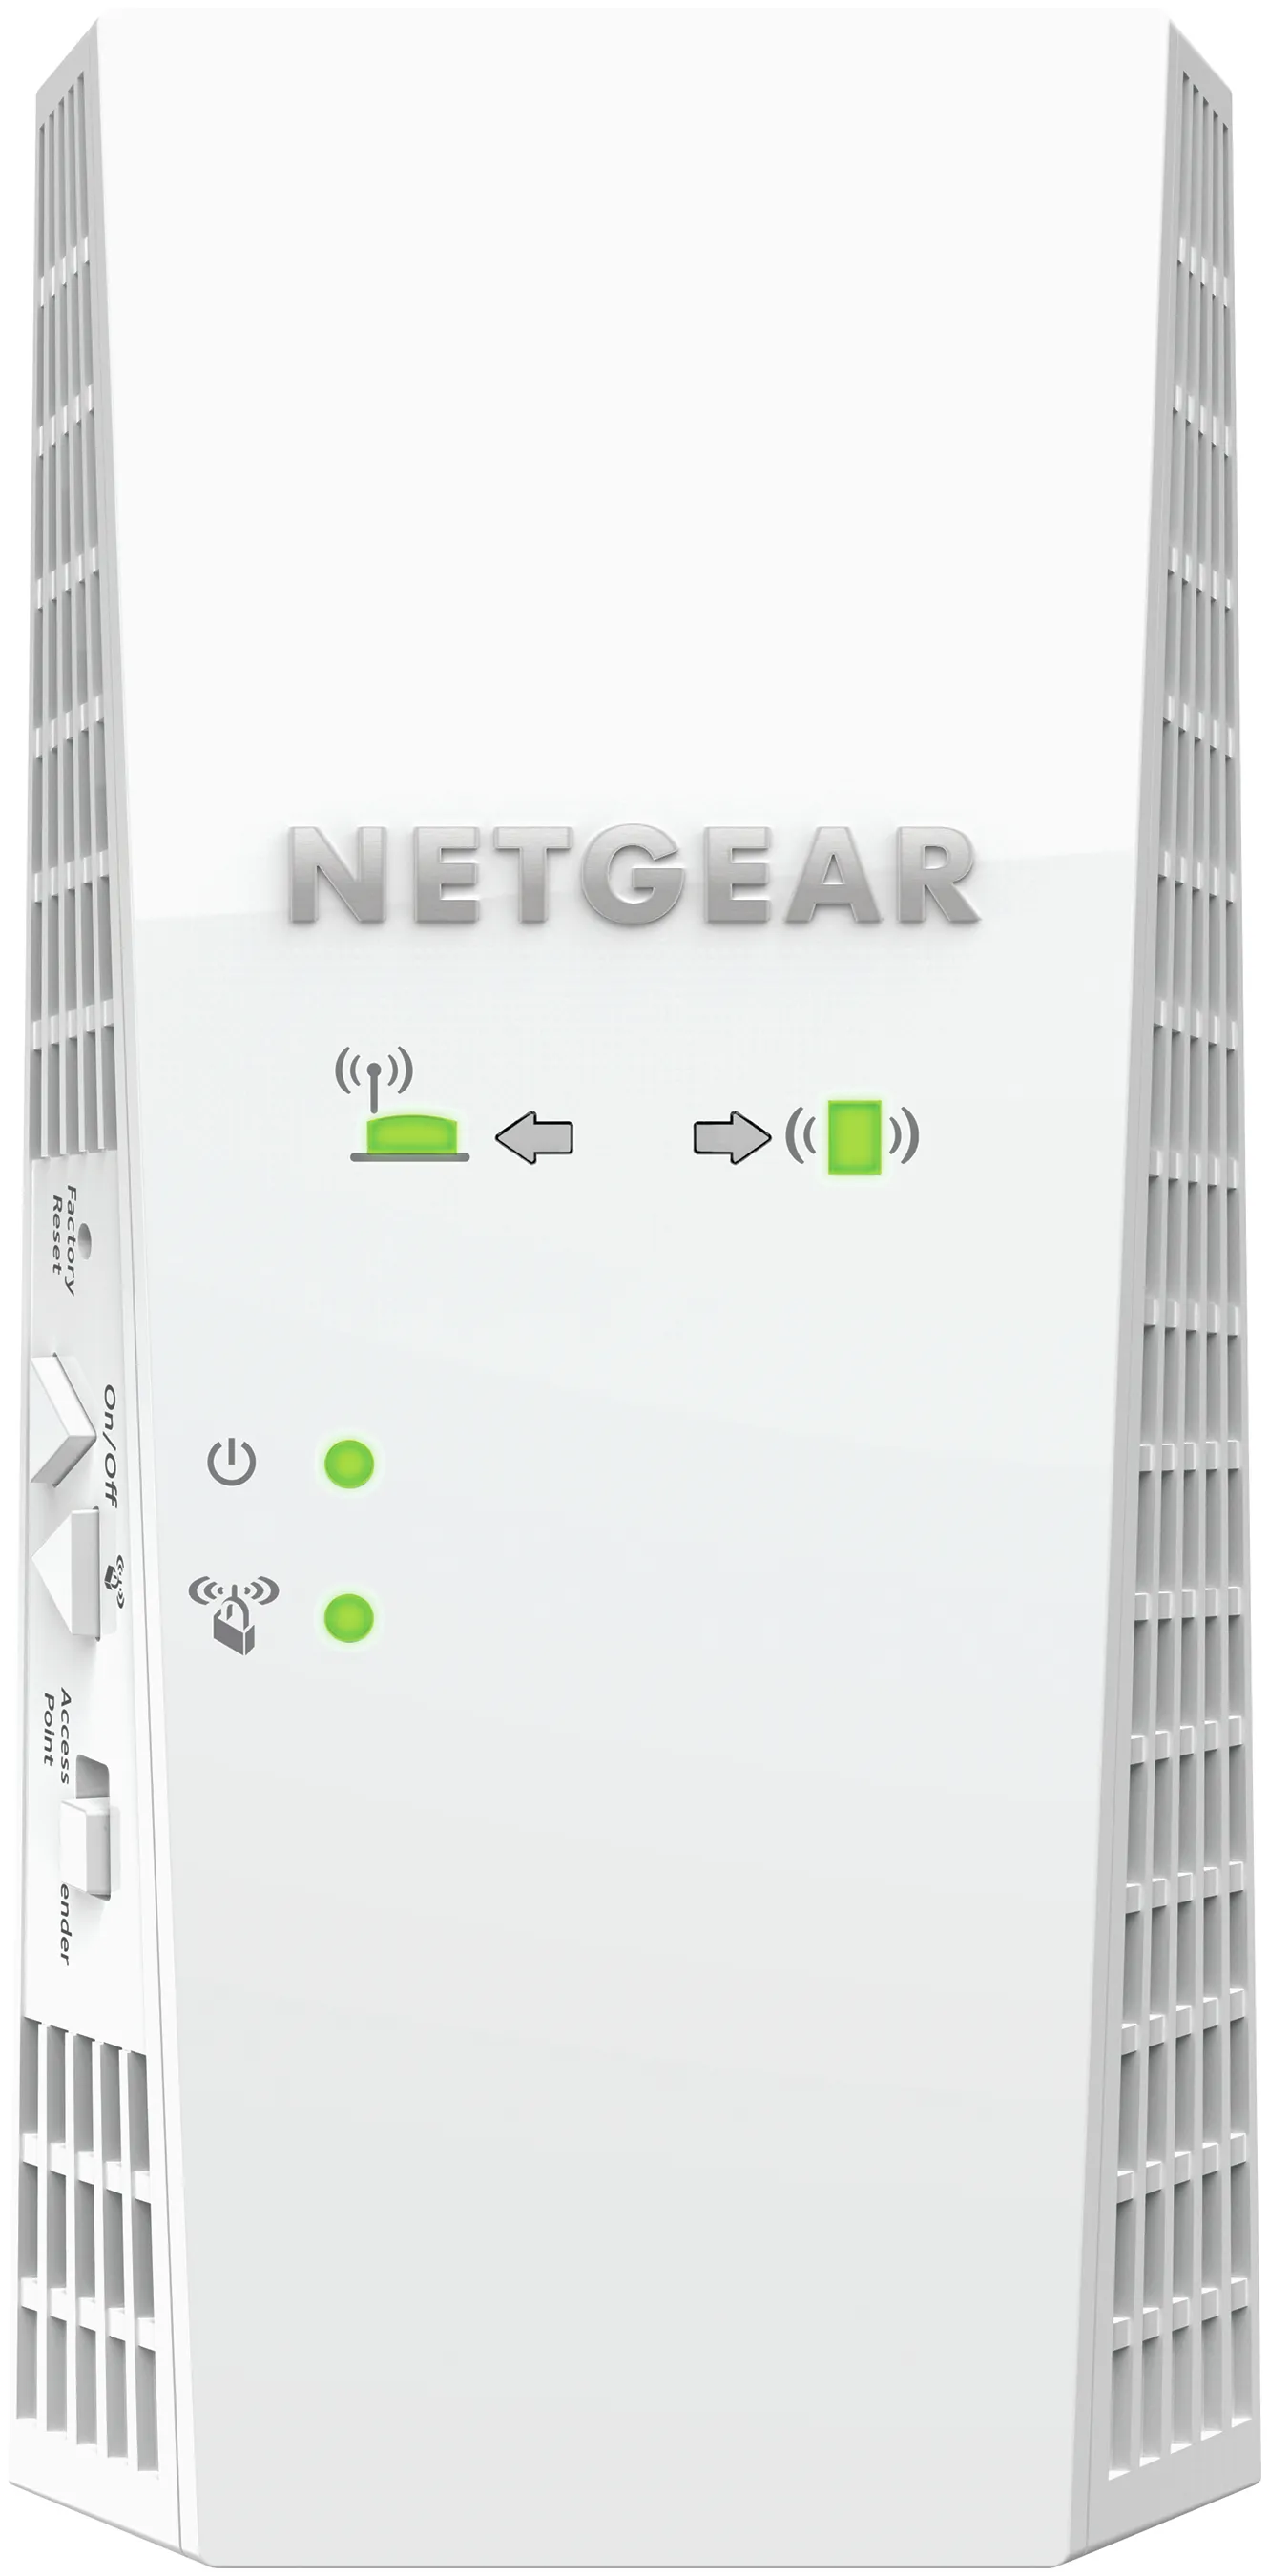 Achat NETGEAR Nighthawk X4 et autres produits de la marque NETGEAR